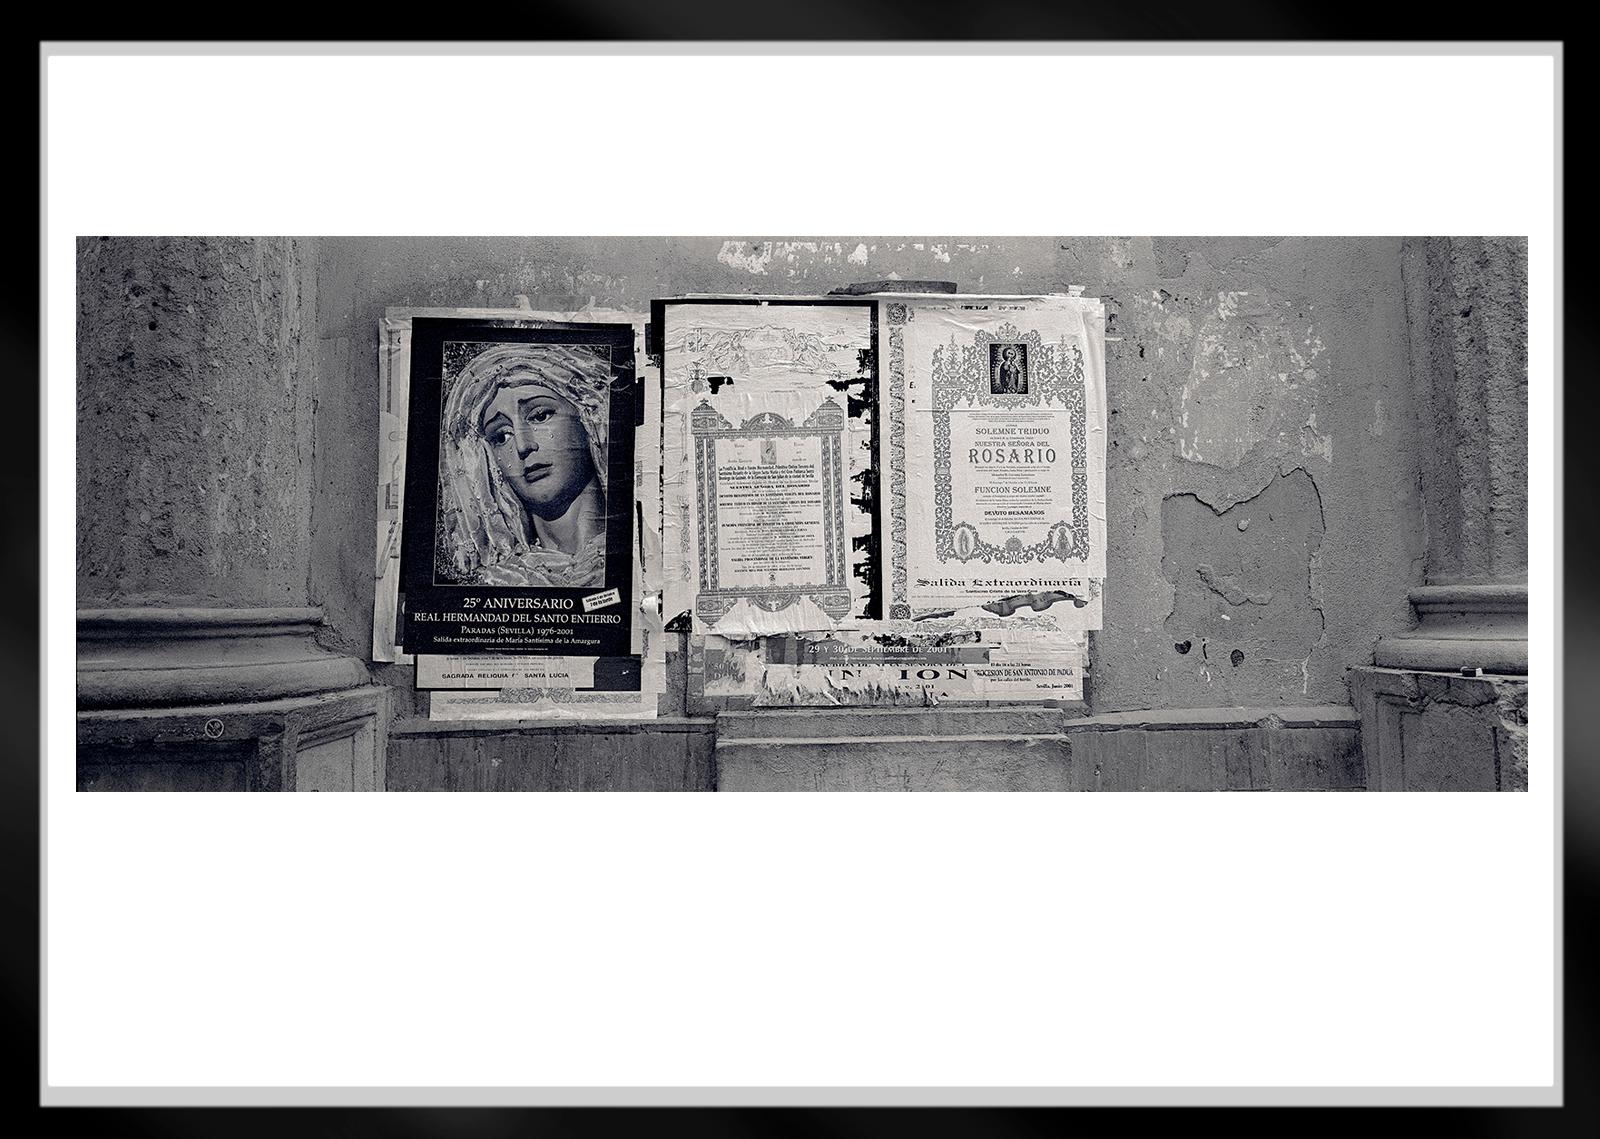 Madonna- Signierter Stillleben-Druck in limitierter Auflage, Schwarz, Large Contemporary (Grau), Black and White Photograph, von Ian Sanderson